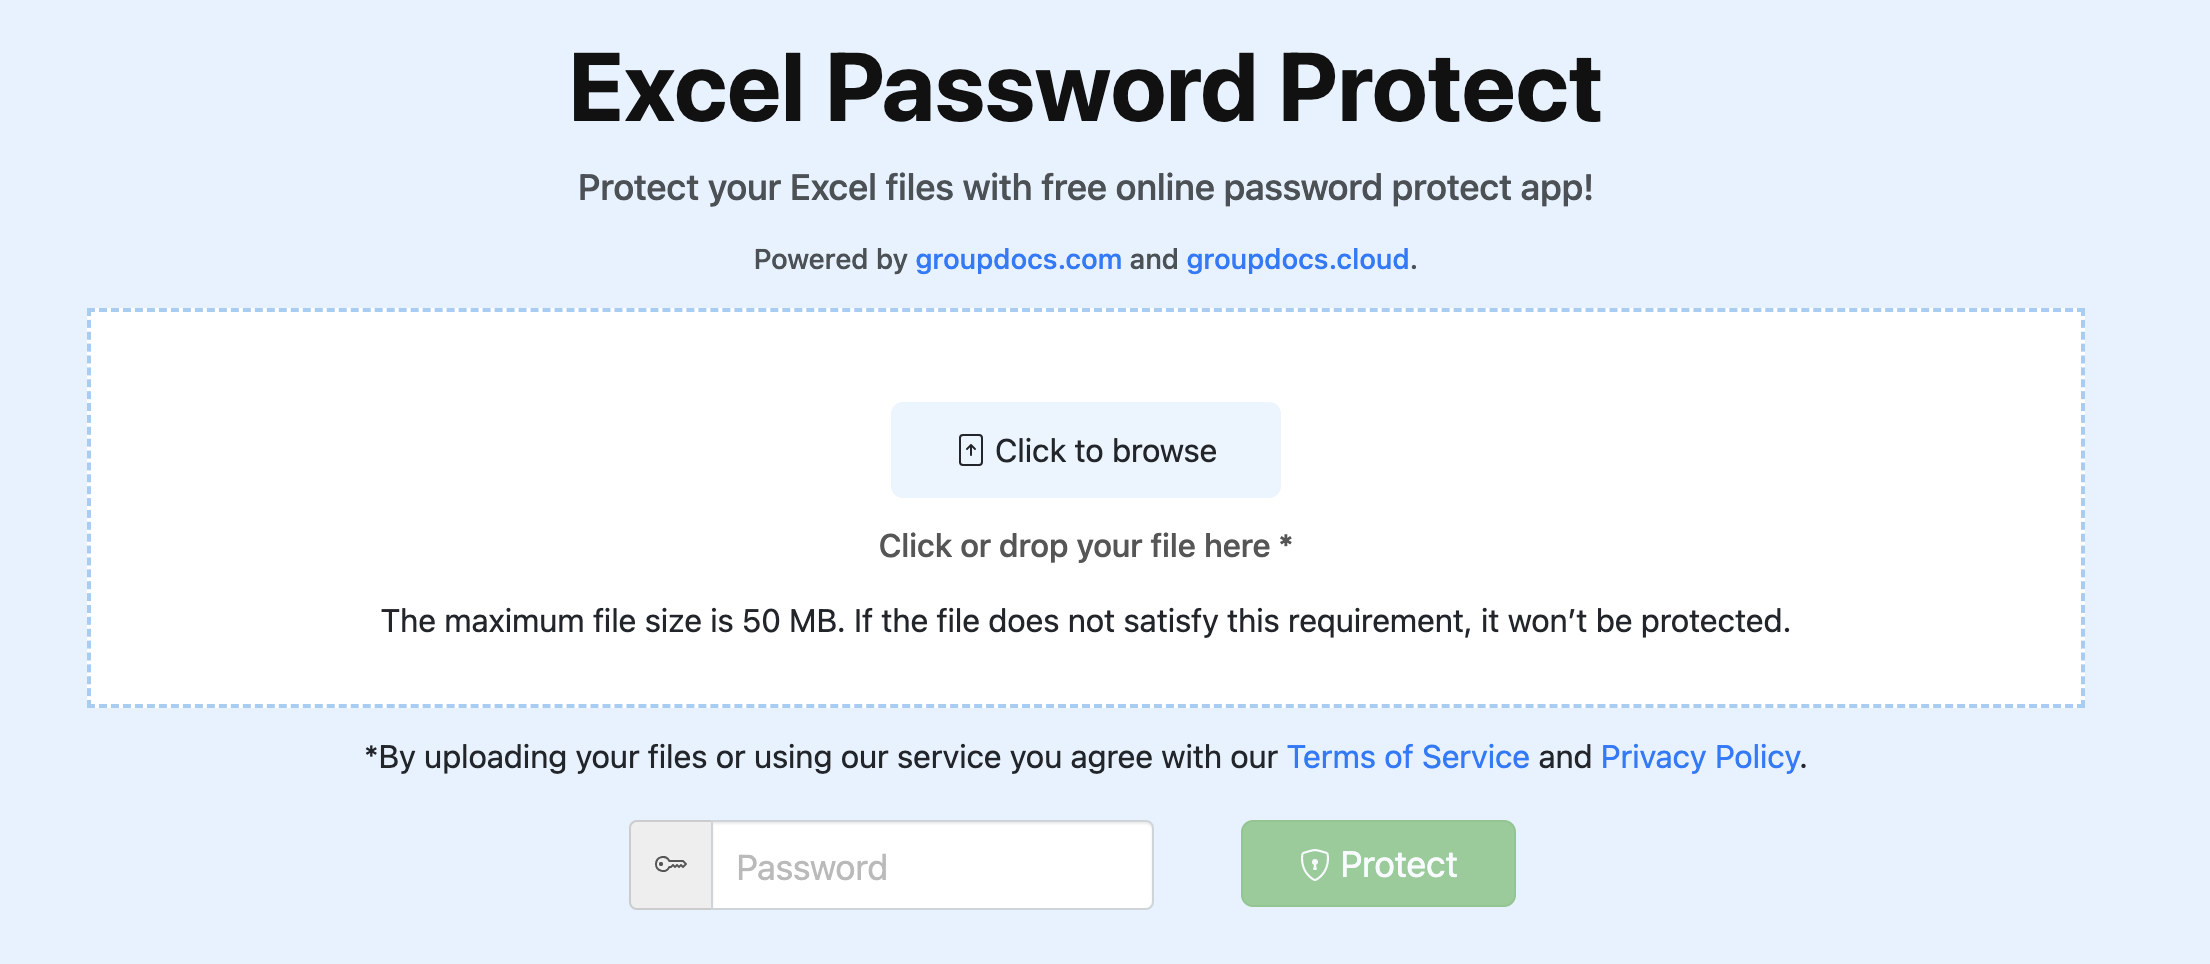 حماية كلمة المرور لبرنامج Excel عبر الإنترنت